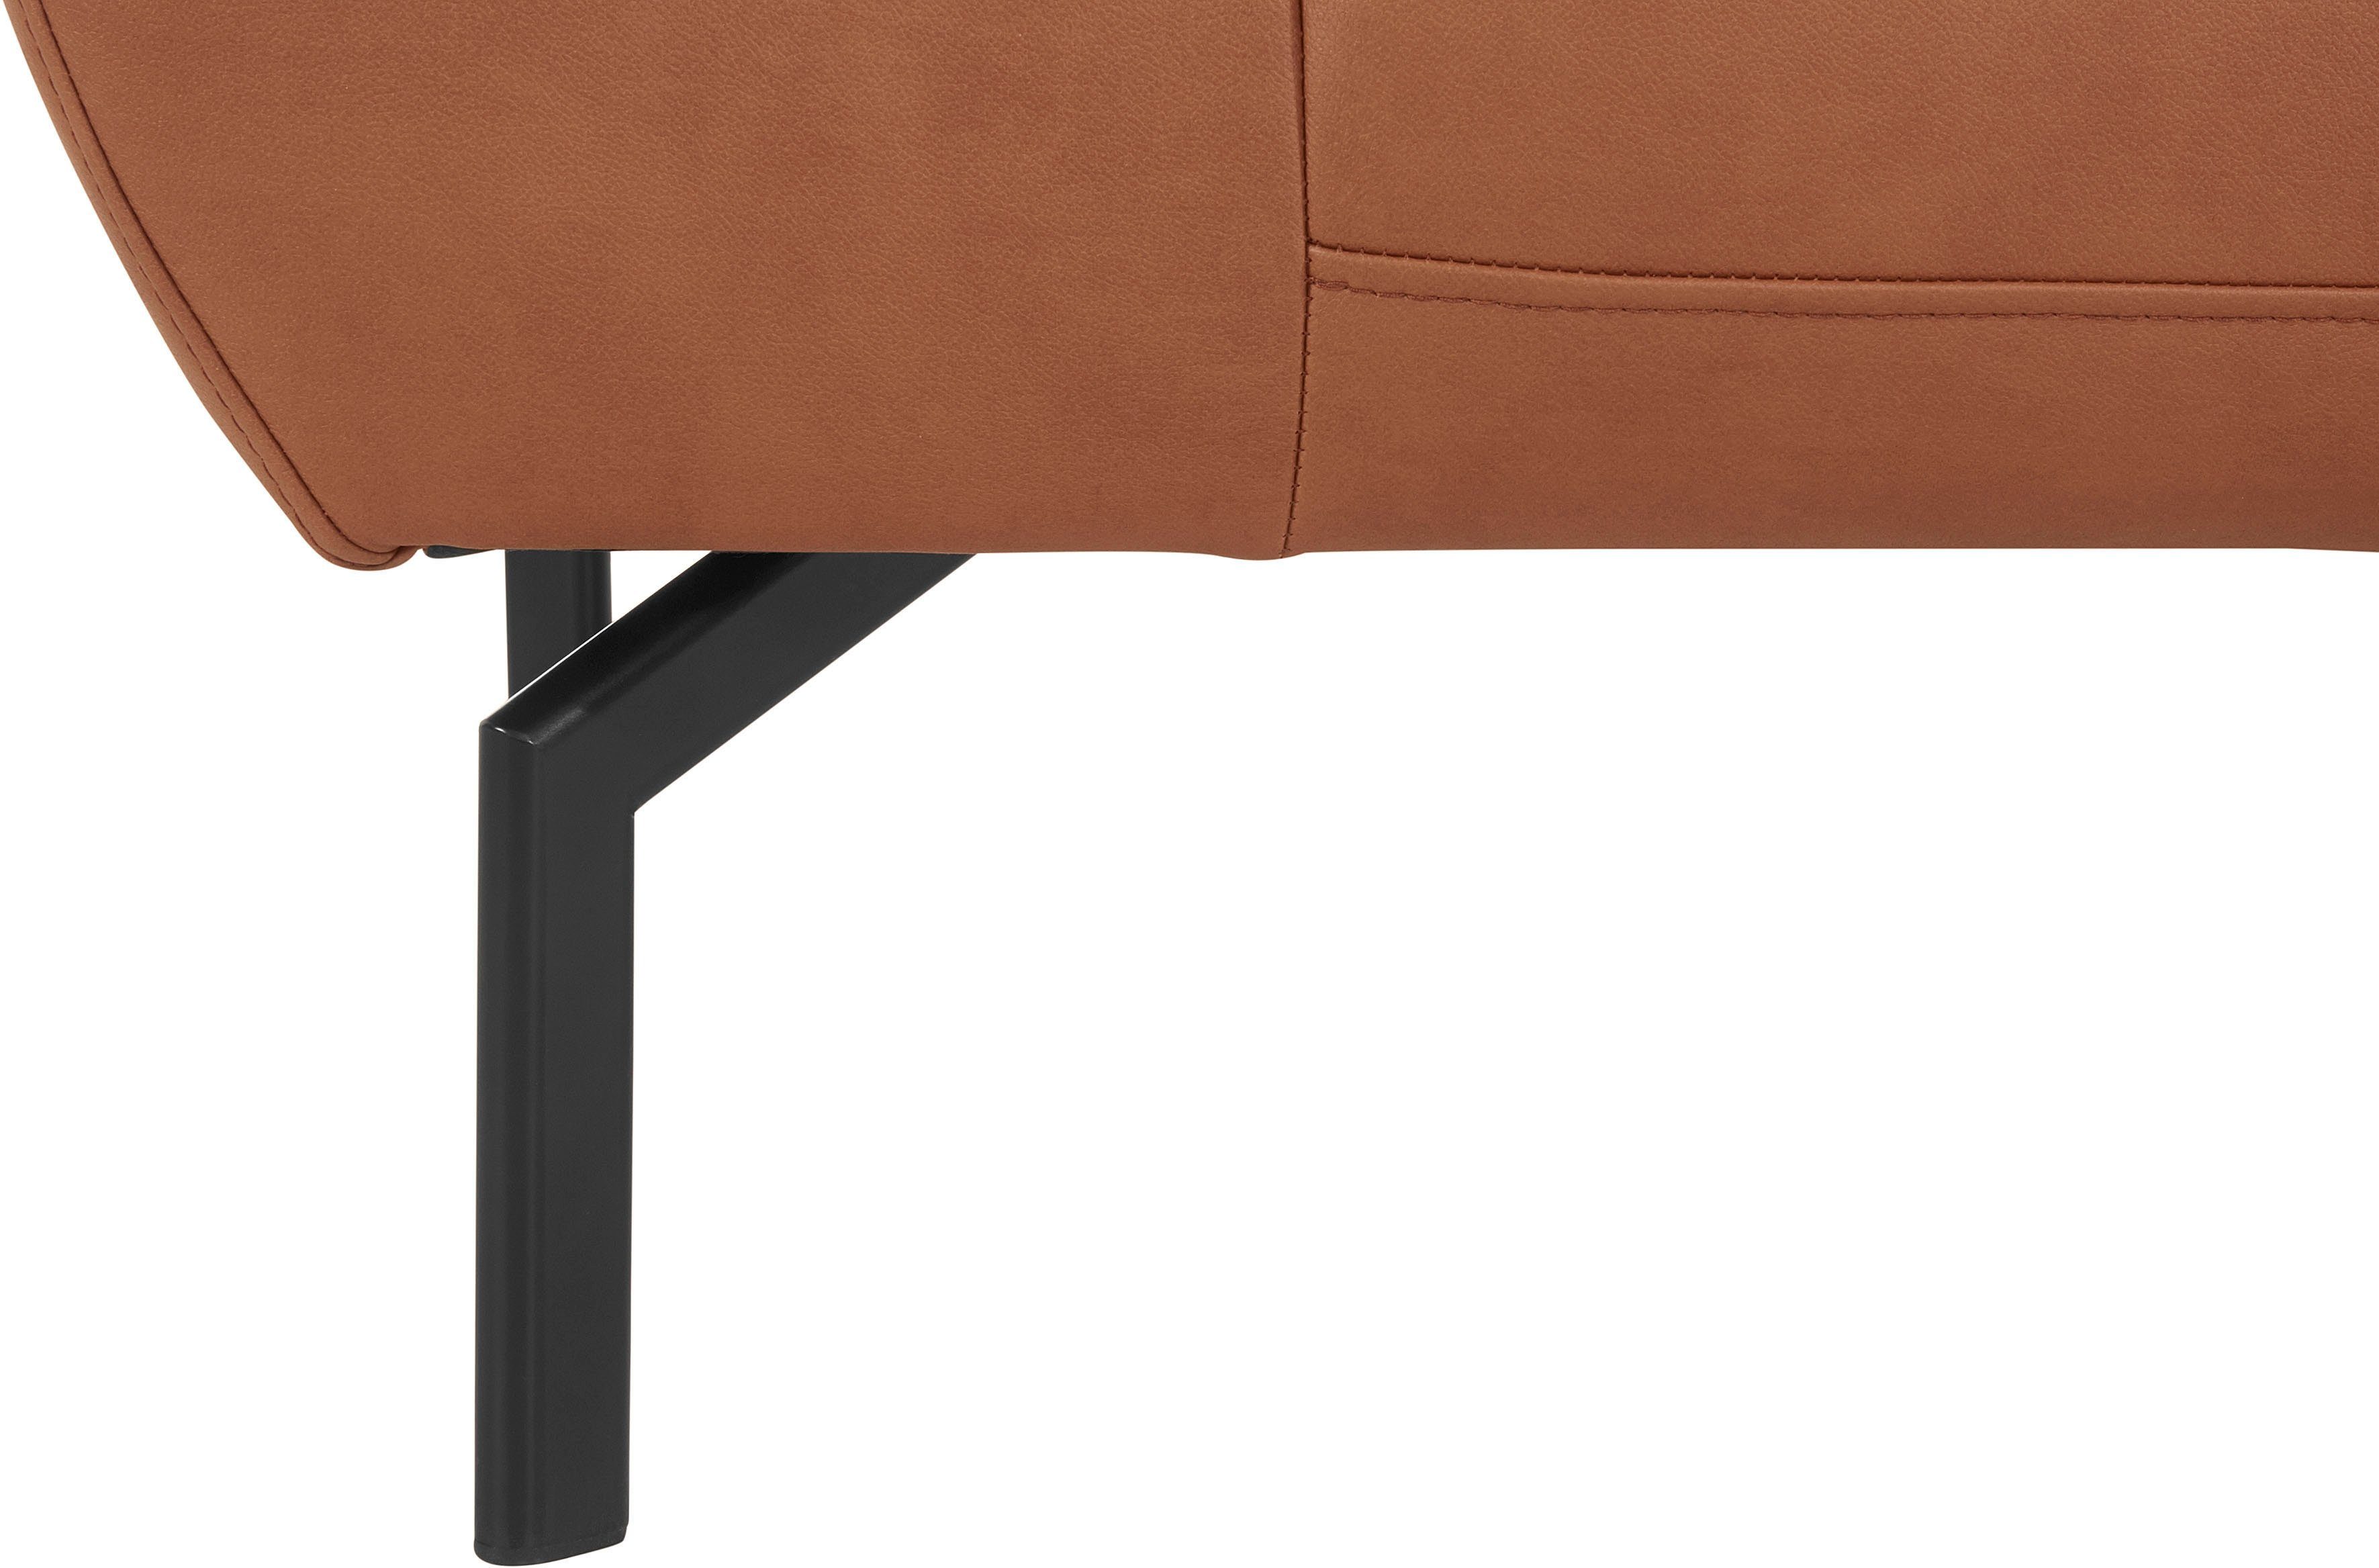 Rückenverstellung, Style of in 2-Sitzer wahlweise Luxus-Microfaser Places Trapino Luxus, mit Lederoptik